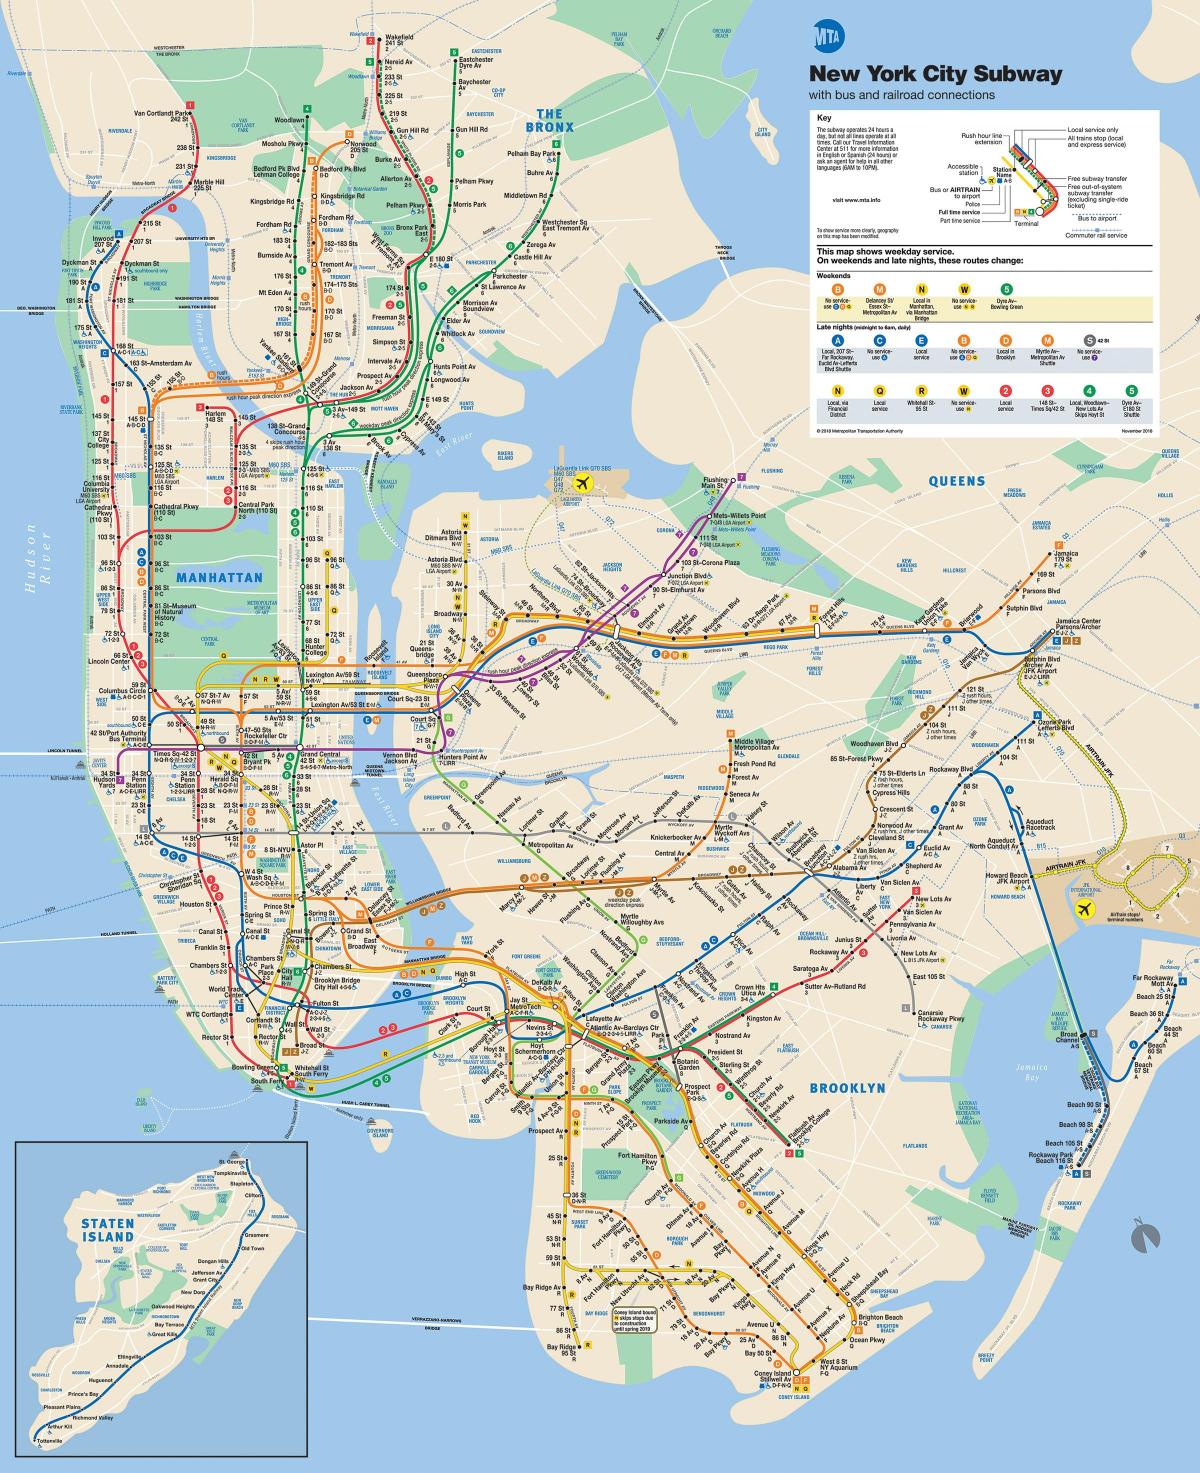 New York karta podzemne željeznice na Manhattanu